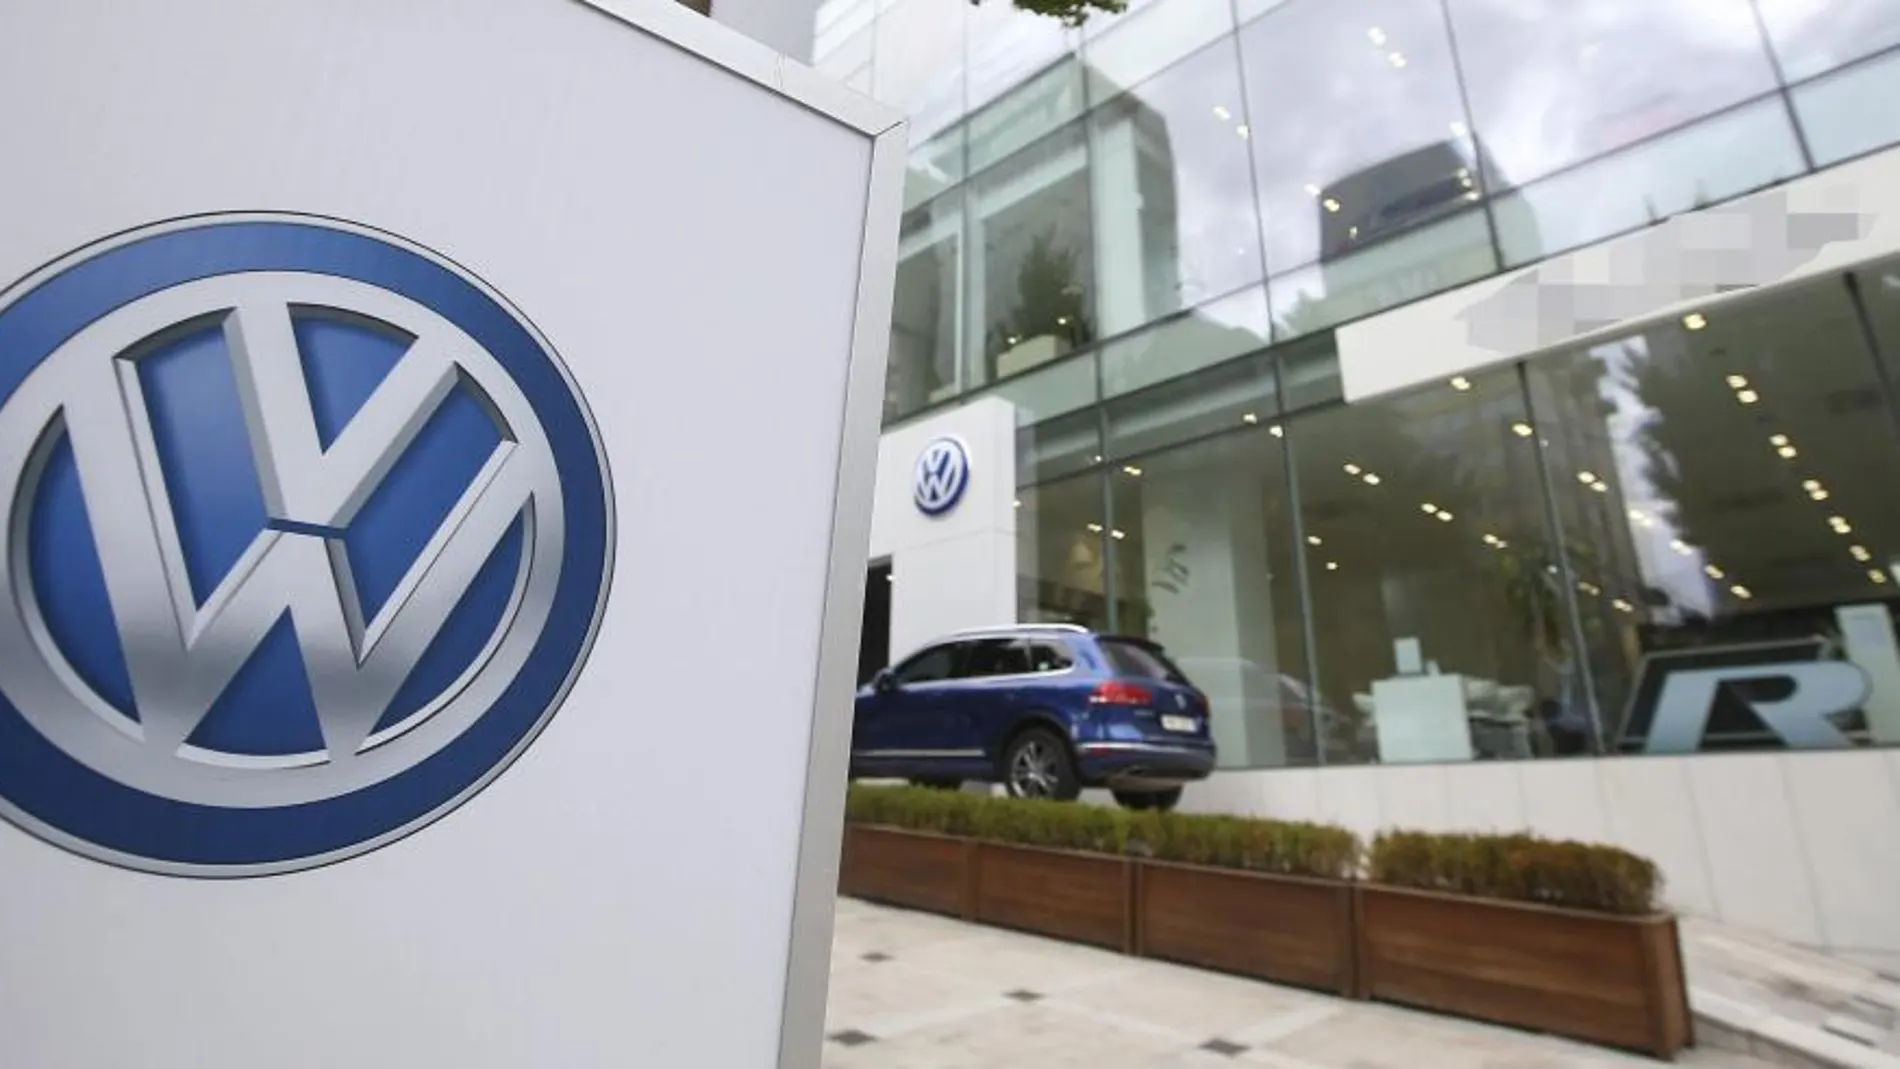 Manos Limpias se ha querellado contra los presidentes de Volkswagen Audi España, Volkswagen Navarra SEAT, Jürgen Stackmann